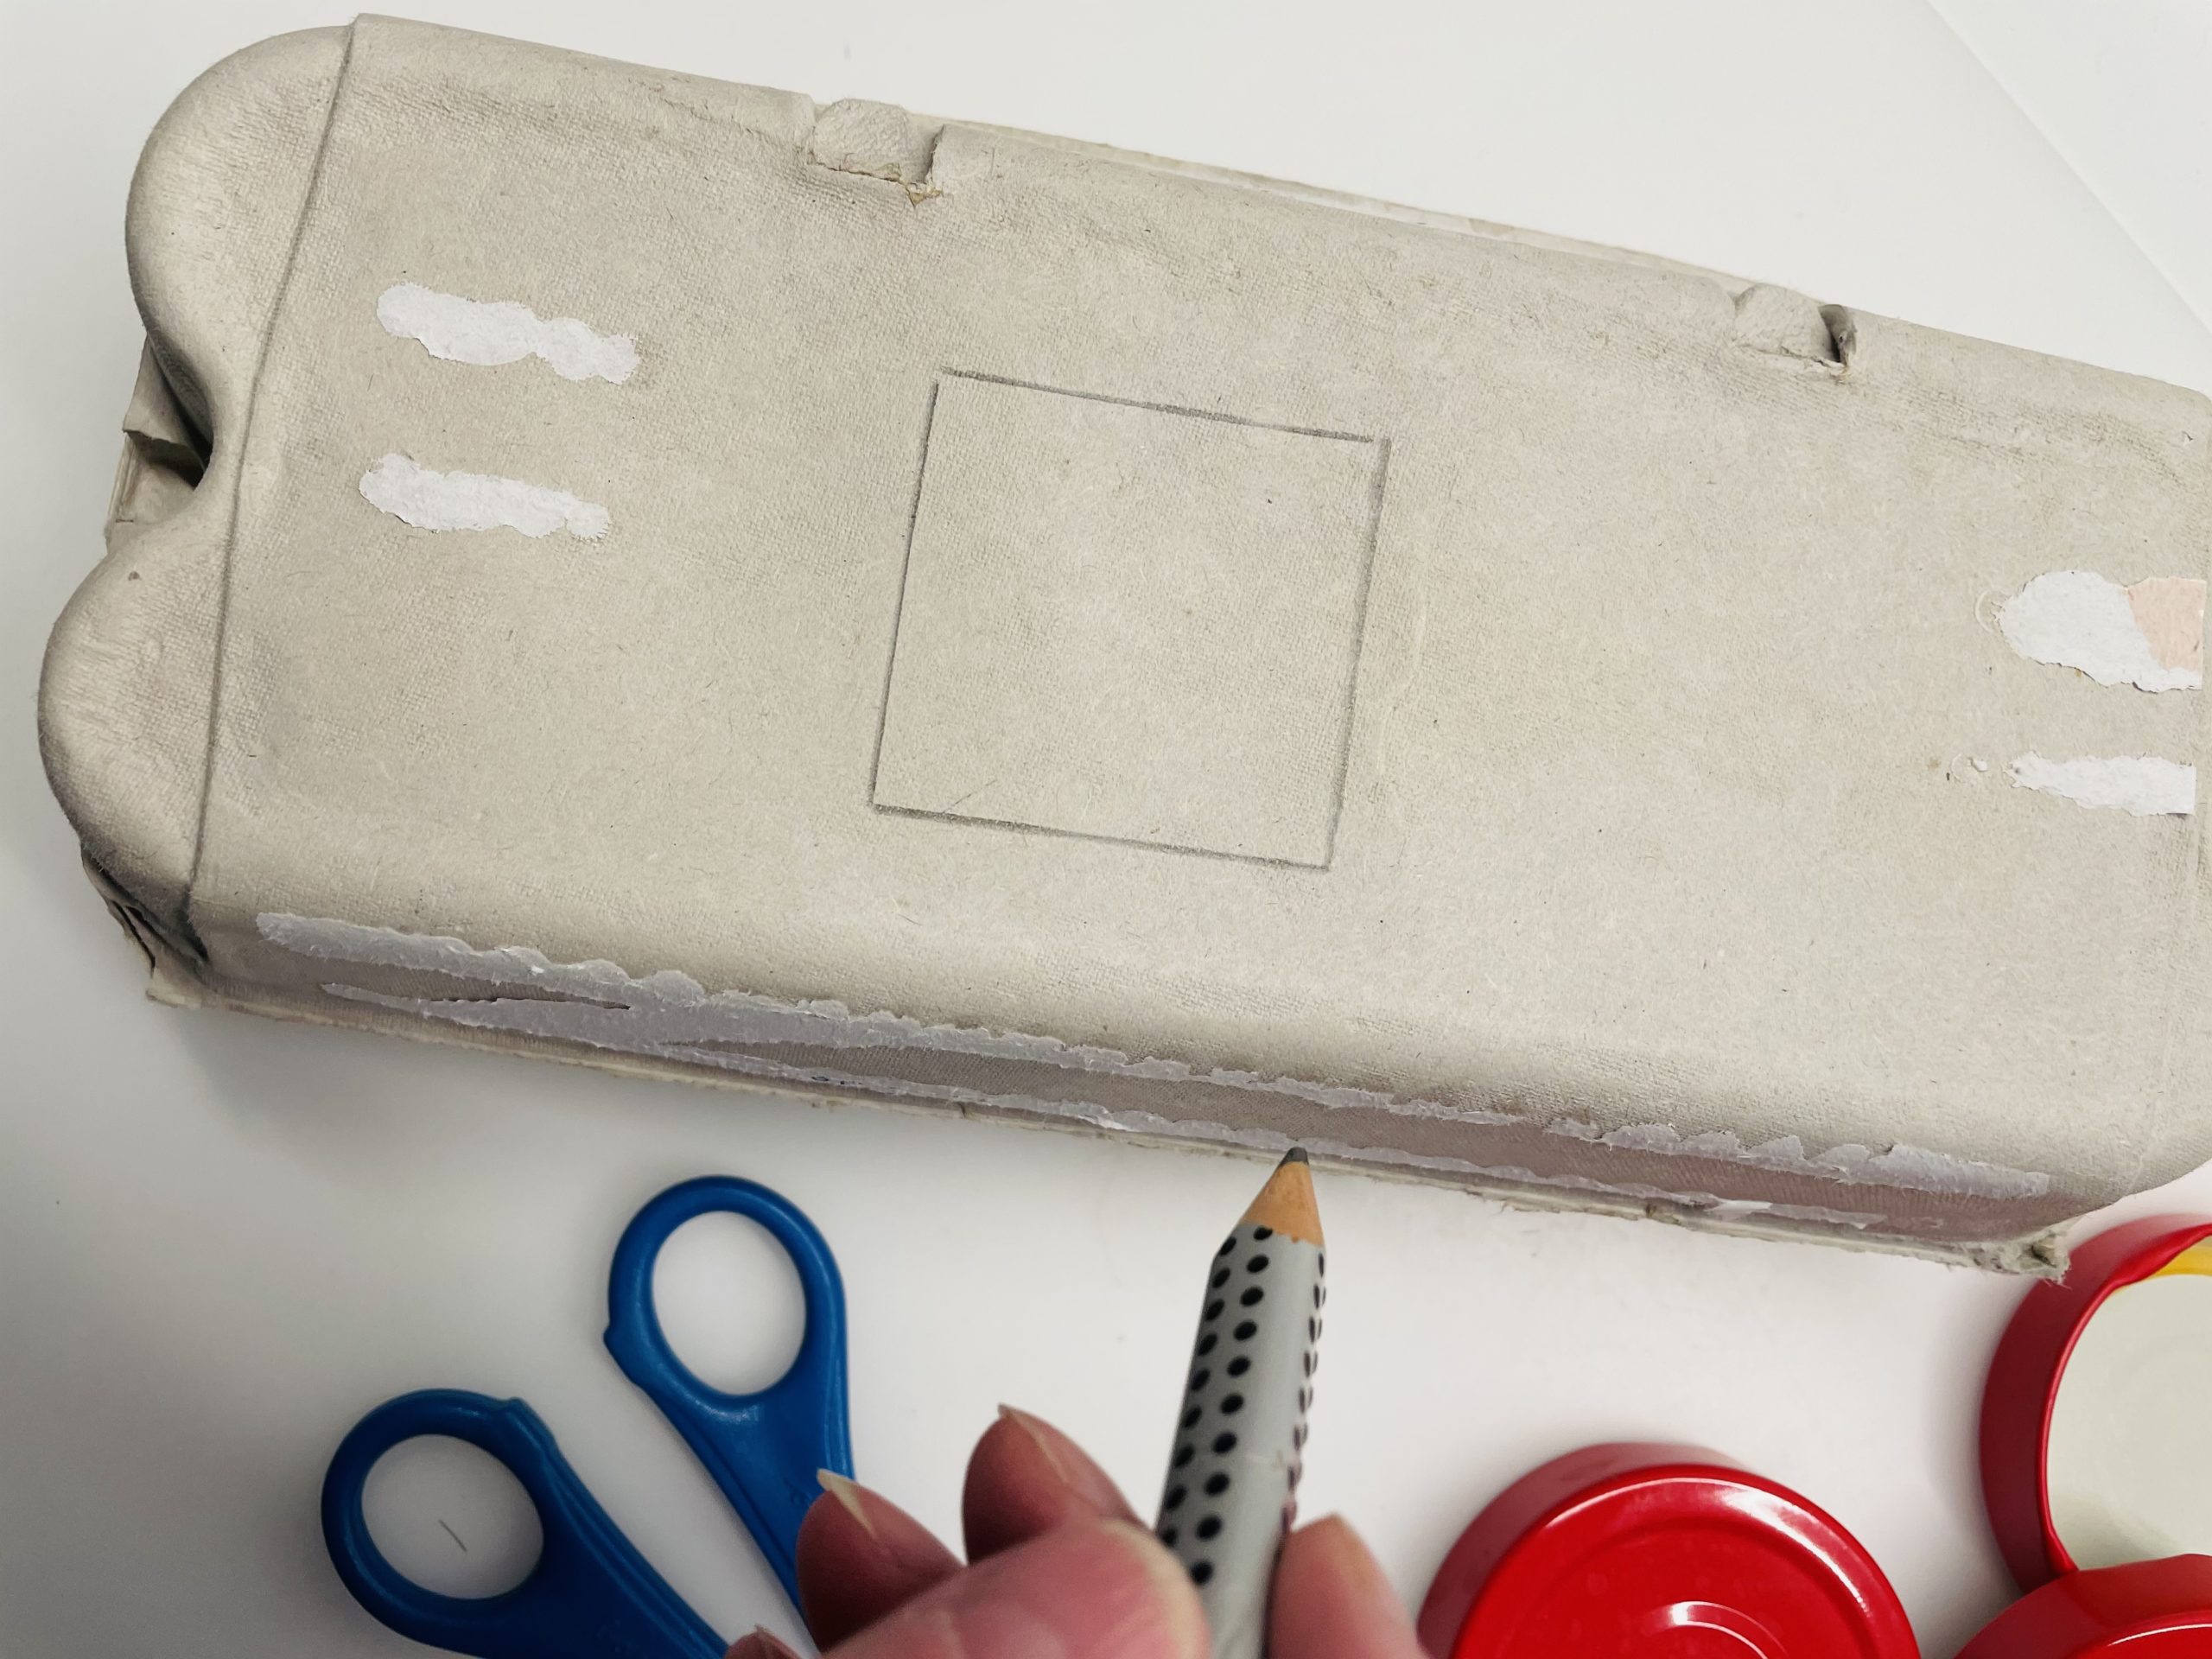 Bild zum Schritt 3 für das Bastel- und DIY-Abenteuer für Kinder: 'Malt zuerst auf den Schachteldeckel des Eierkartons ein Viereck.'